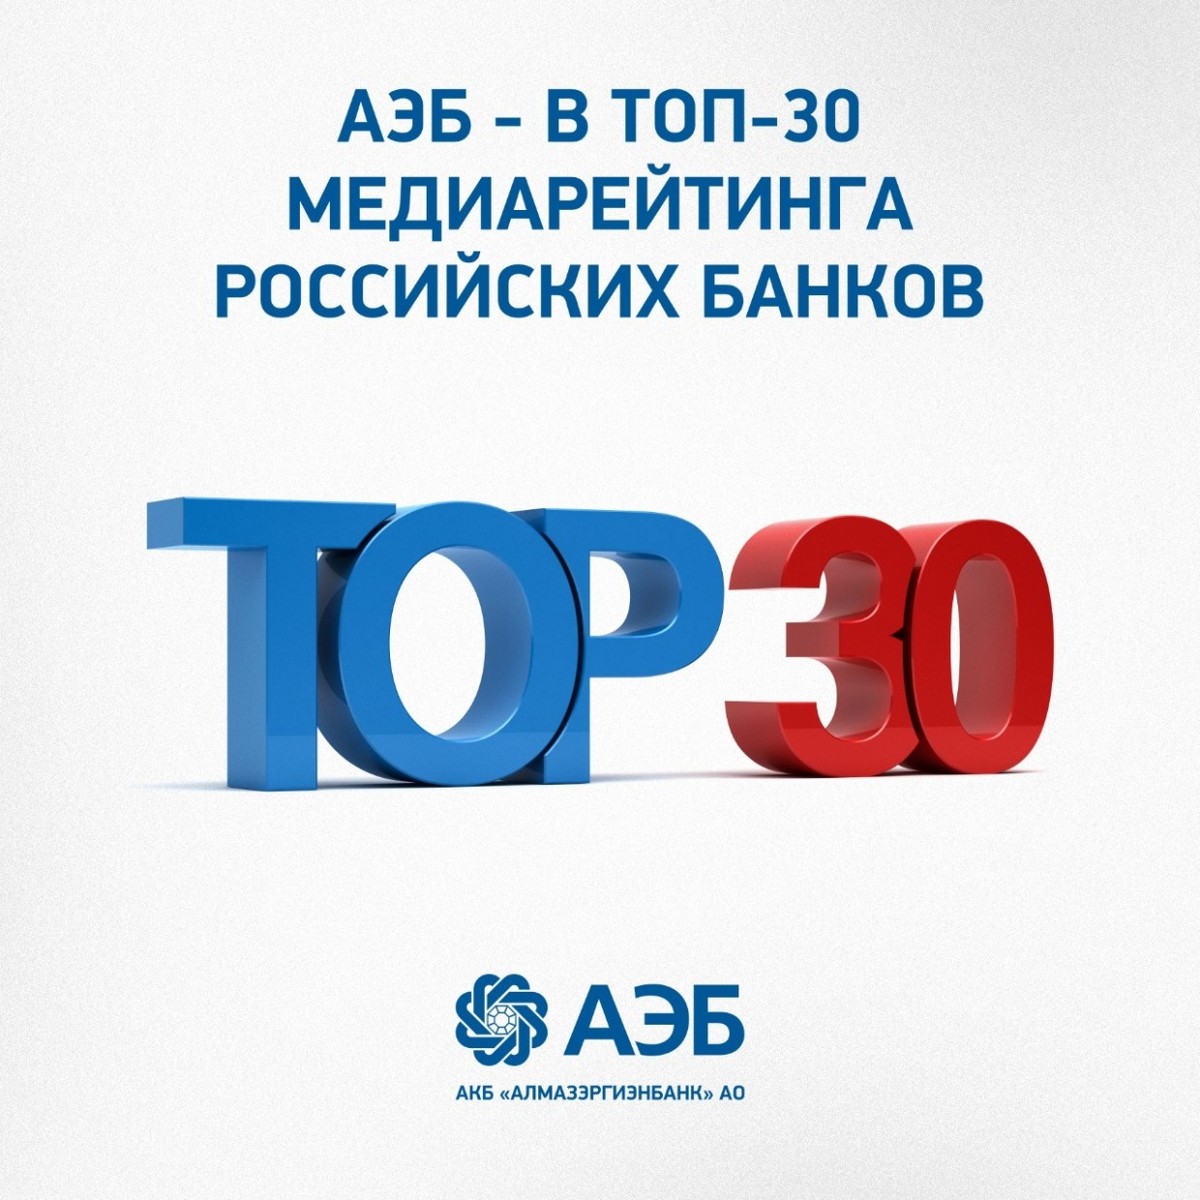 АЭБ - в топ-30 медиарейтинга российских банков